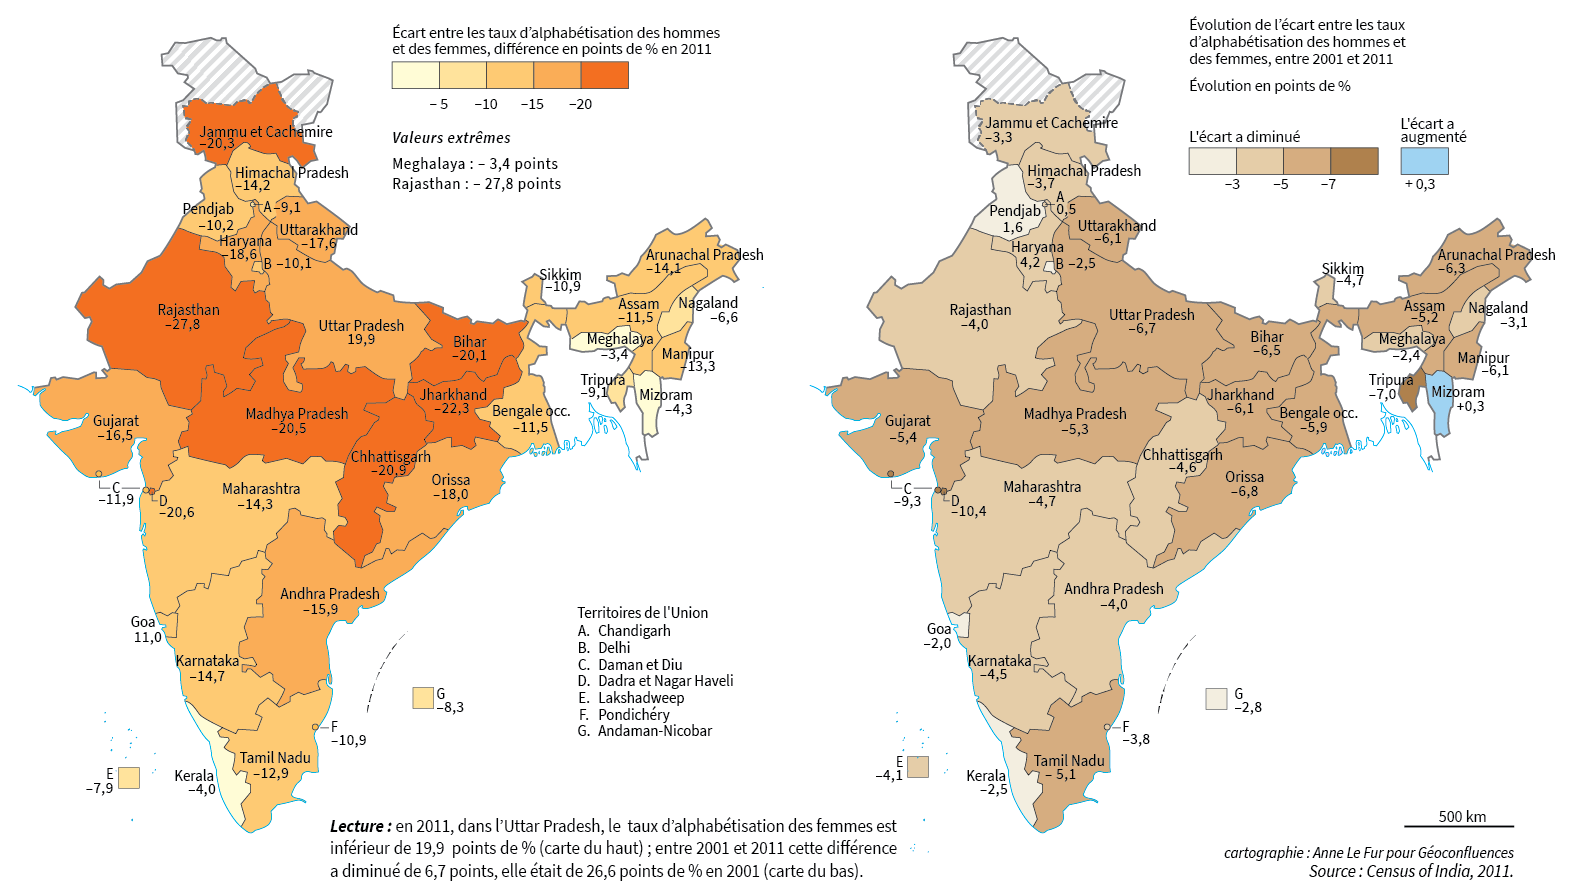 Cartes écart d'alphabétisation femmes-hommes en Inde et réduction de l'écart